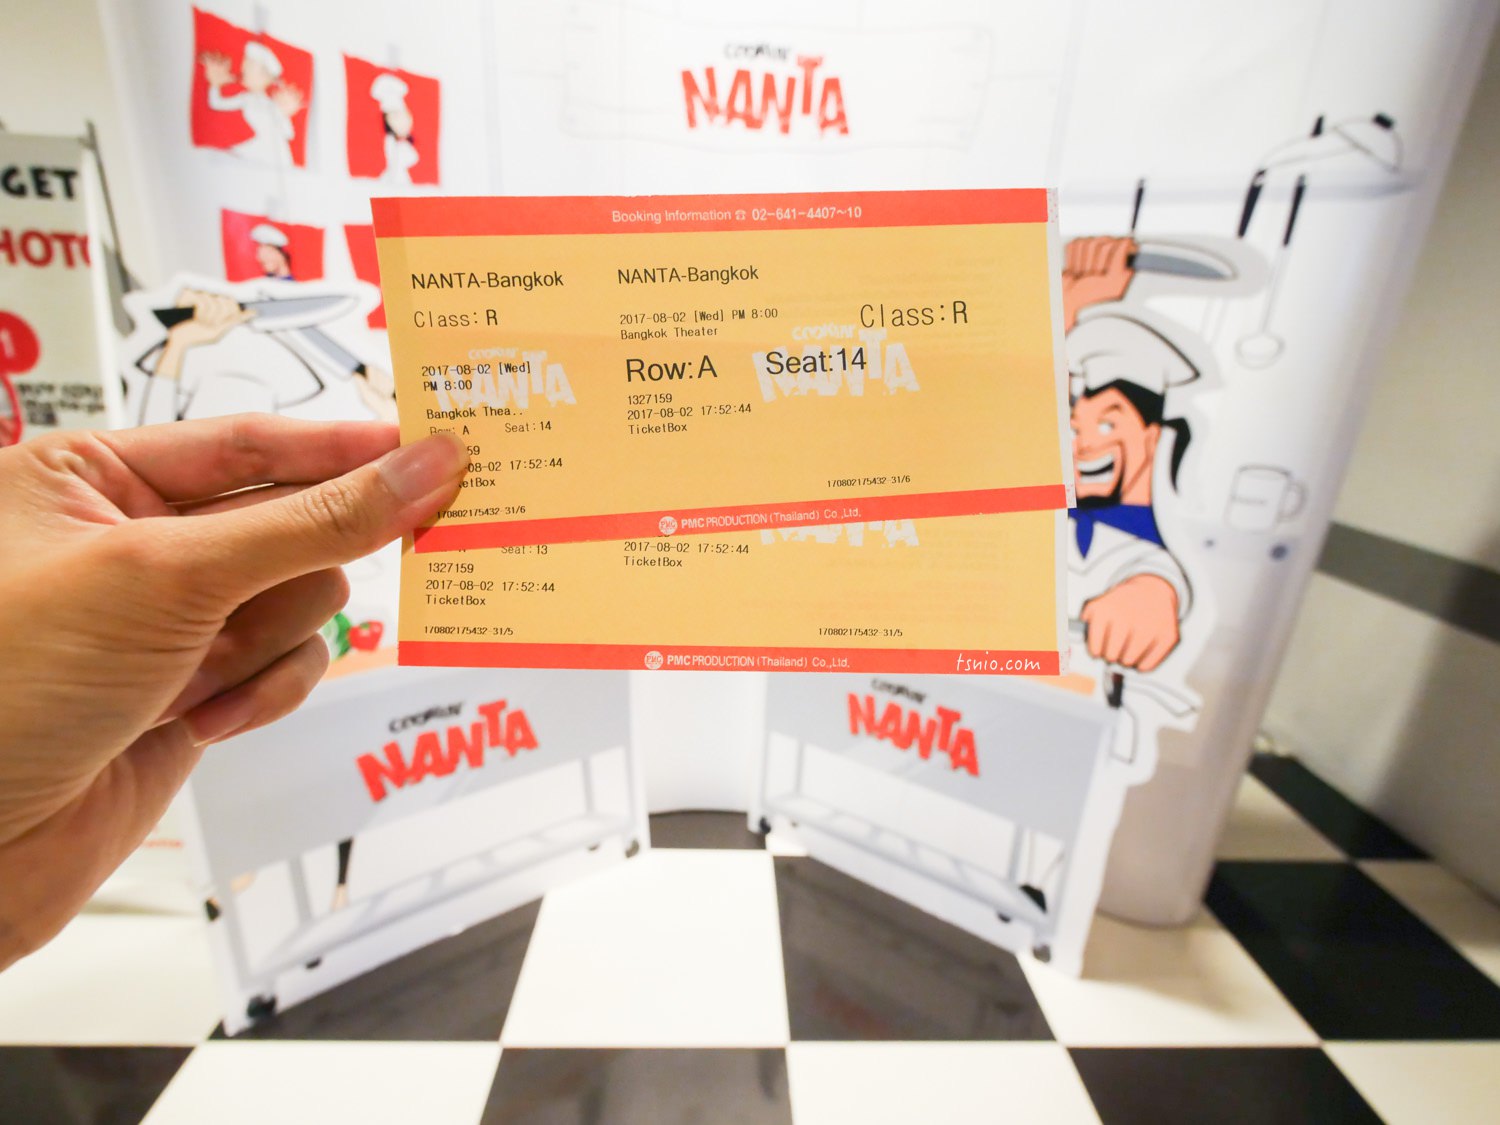 曼谷景點 亂打秀 NANTA 來自韓國的無語言表演 曼谷劇場推薦